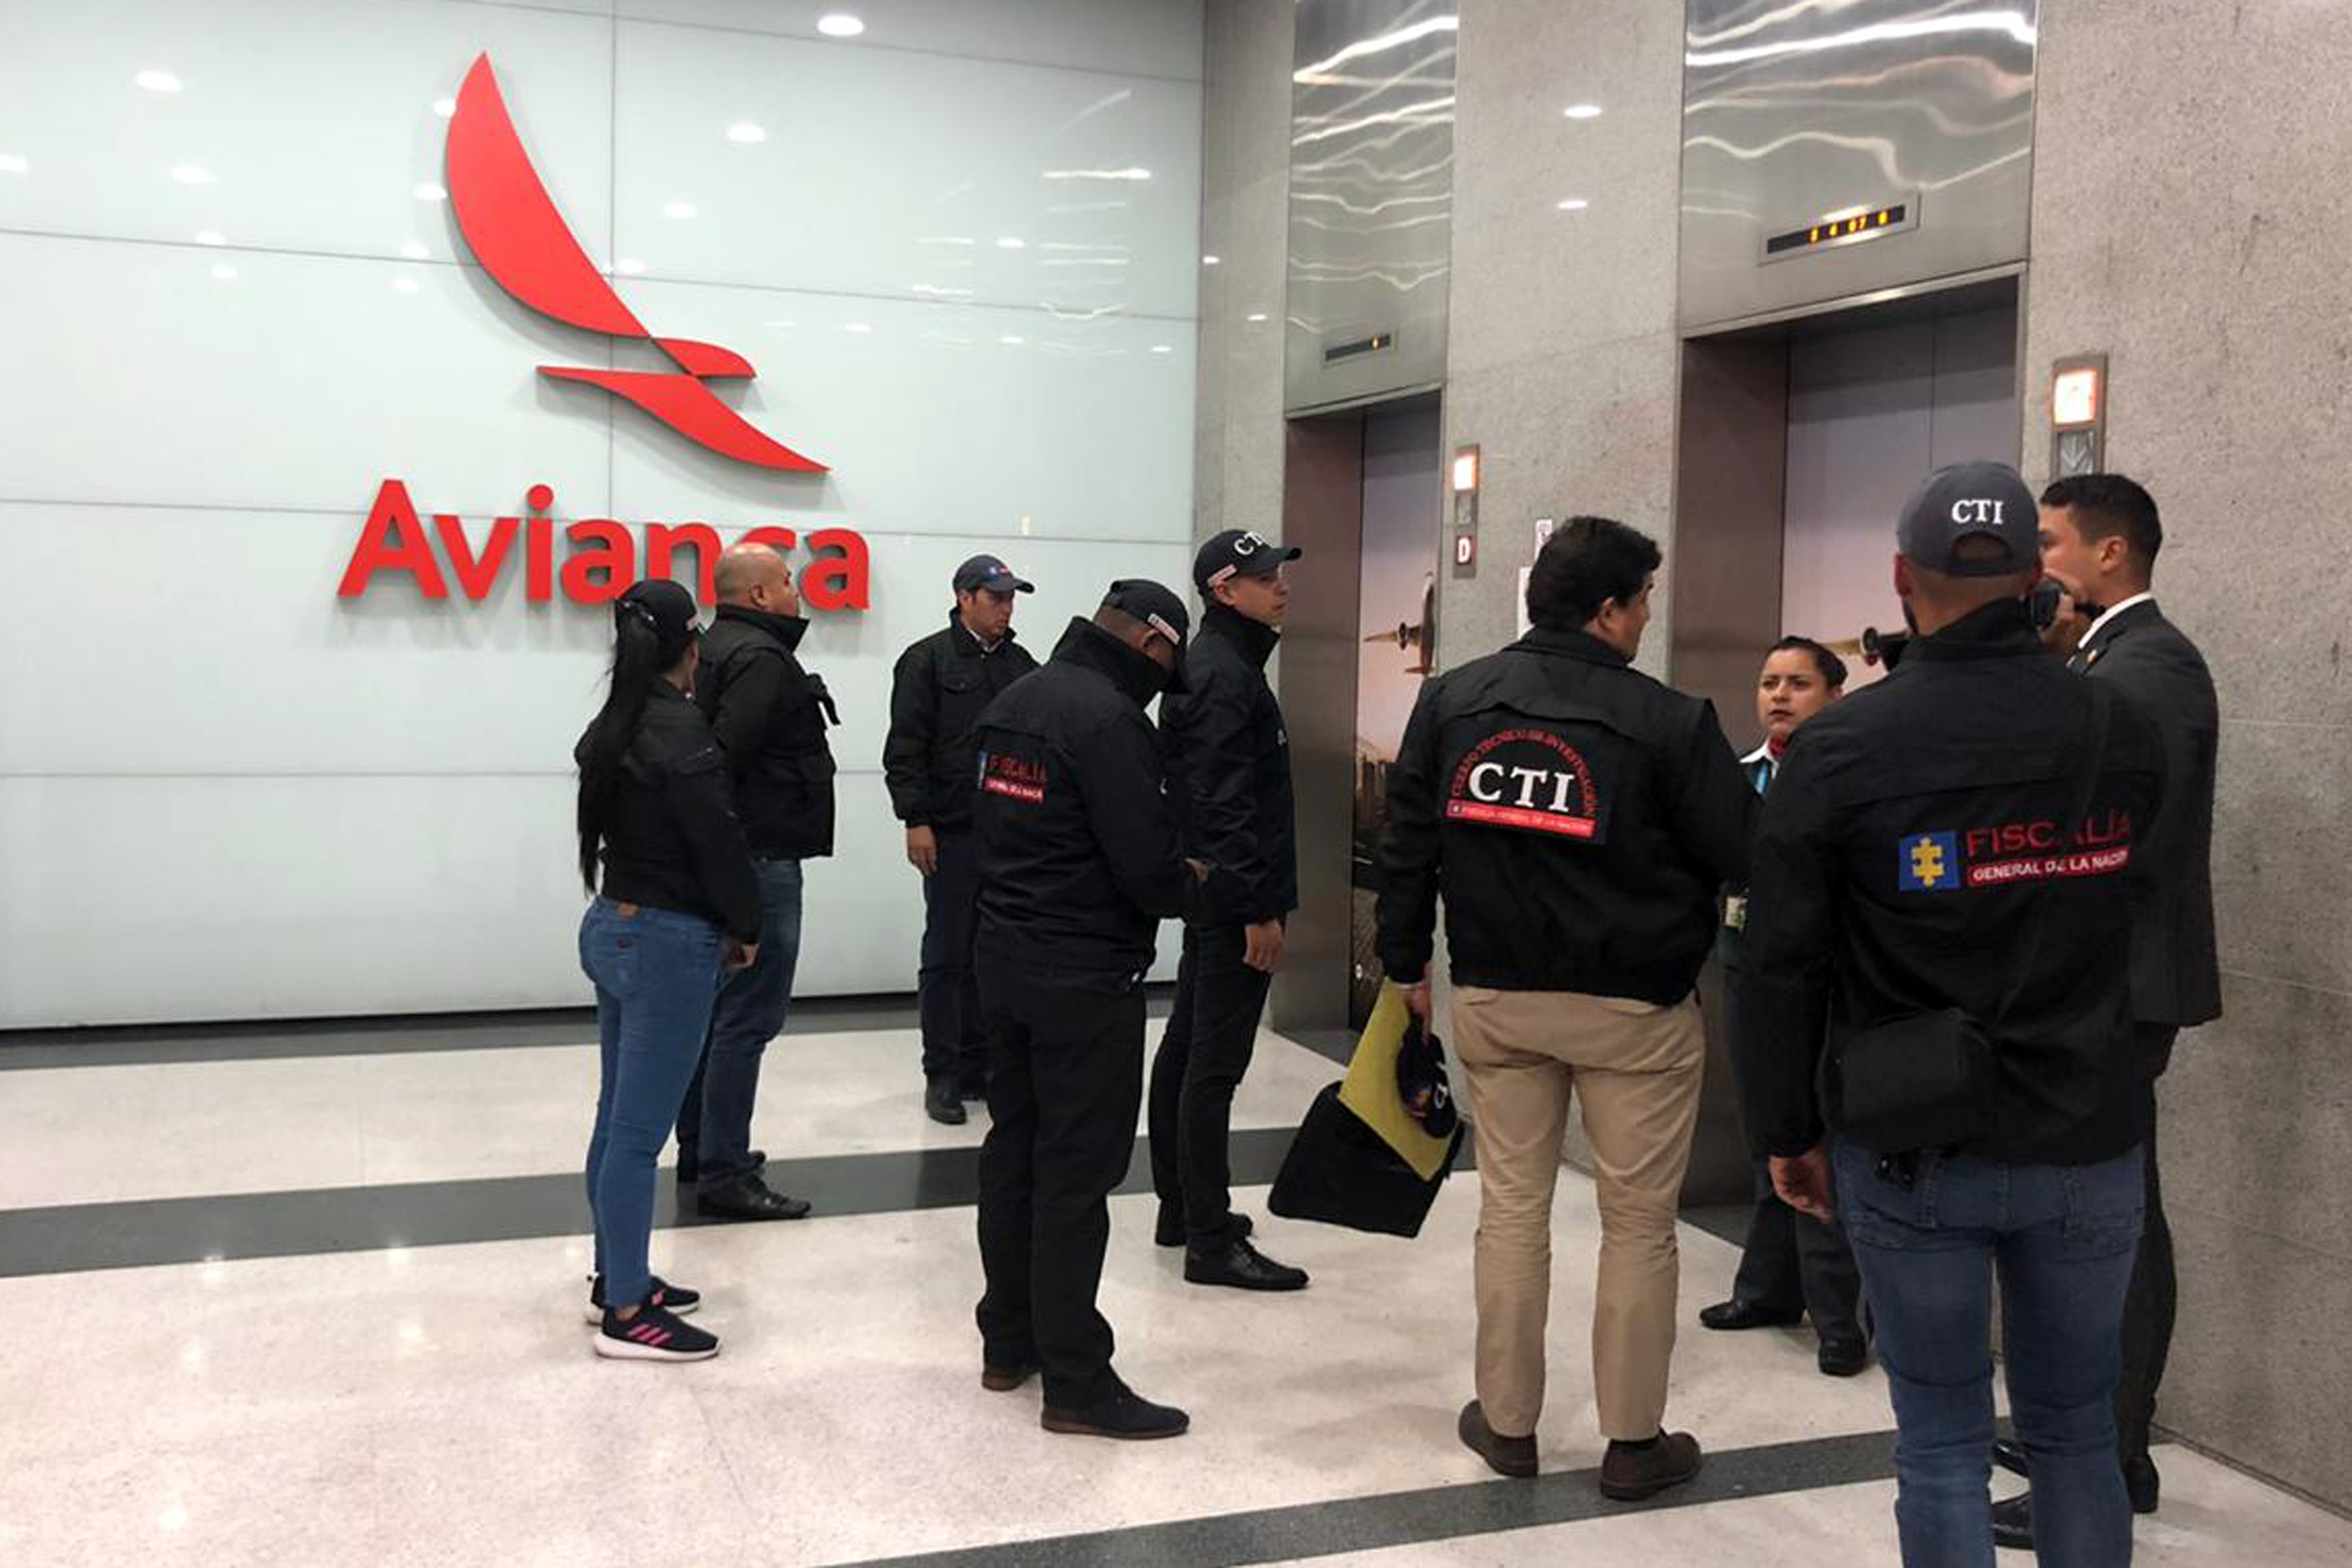 Cuerpo Técnico de Investigación (CTI) haciendo entrada a sede de Avianca Bogota, Colombia